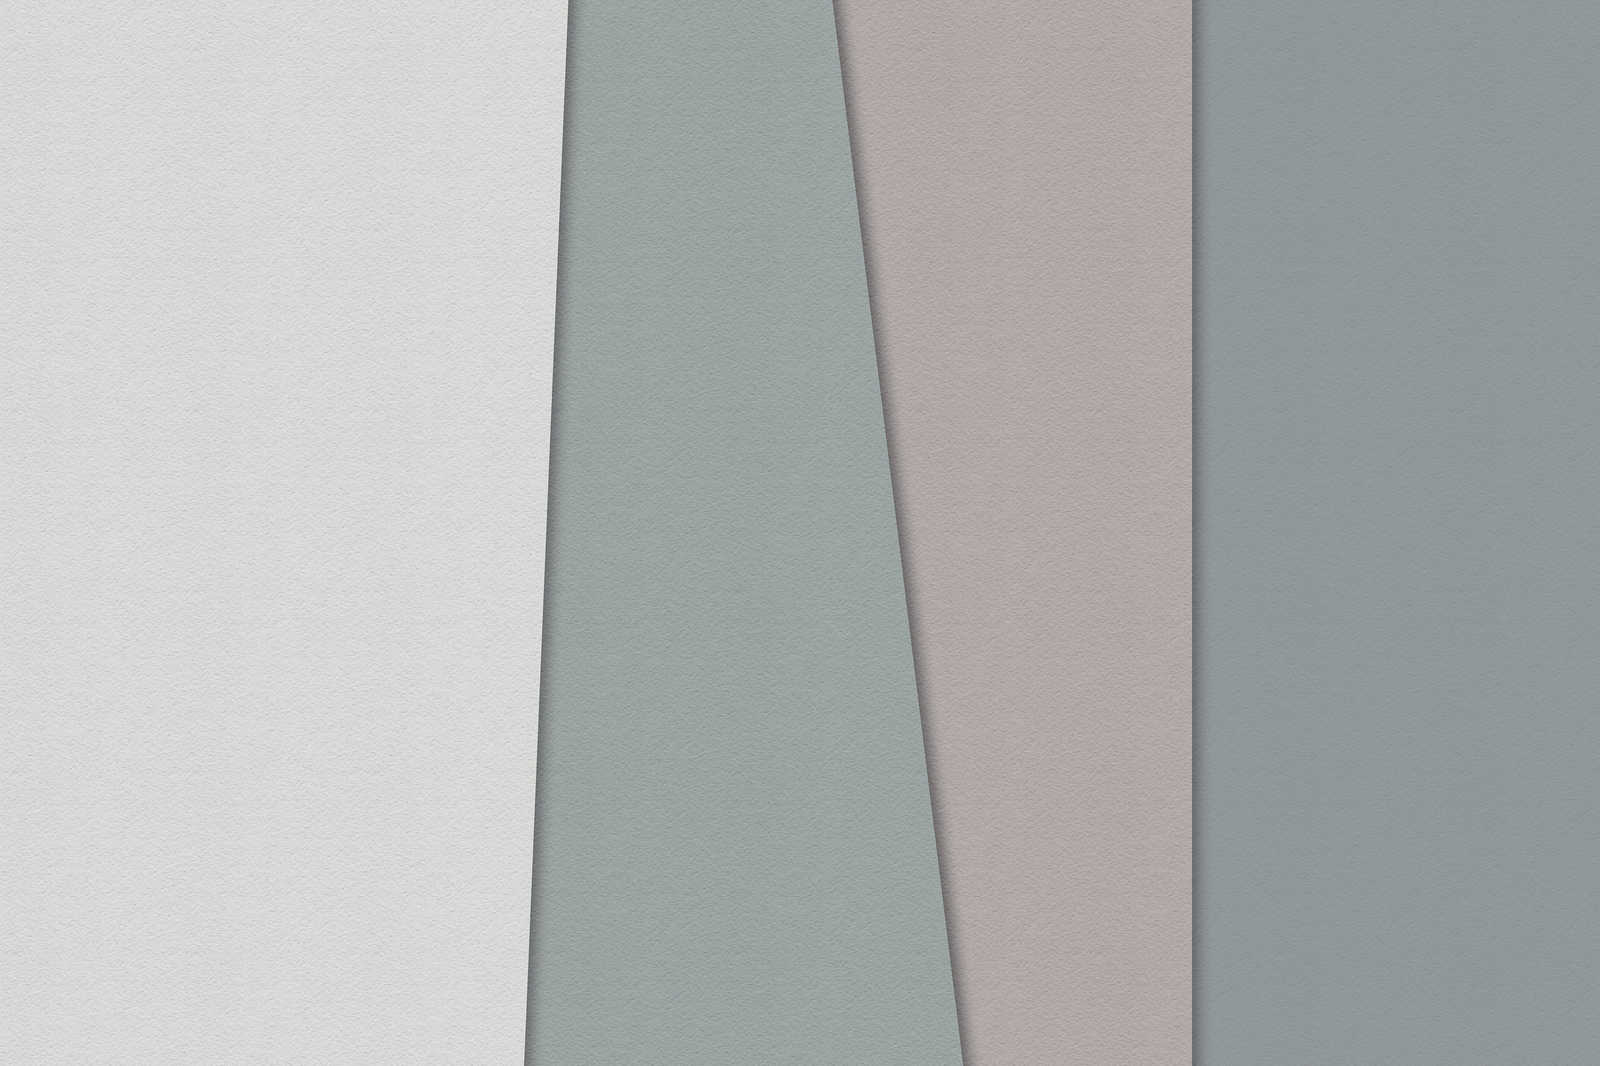             Layered paper 1 - Grafisches Leinwandbild mit Farbflächen in Büttenpapier Struktur – 0,90 m x 0,60 m
        